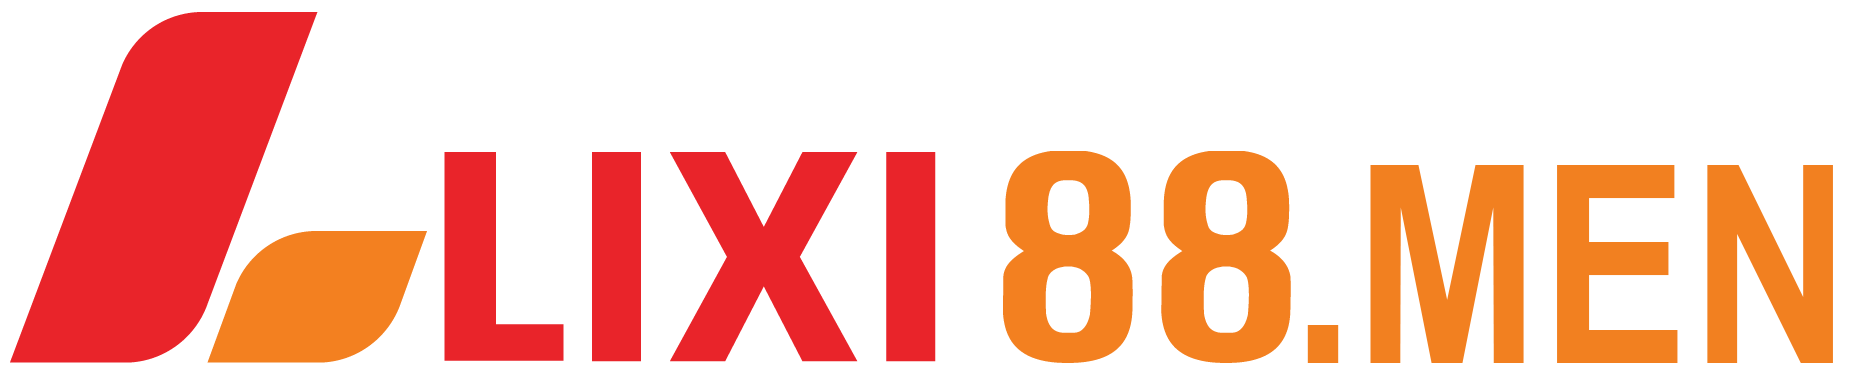 logo LIXI88